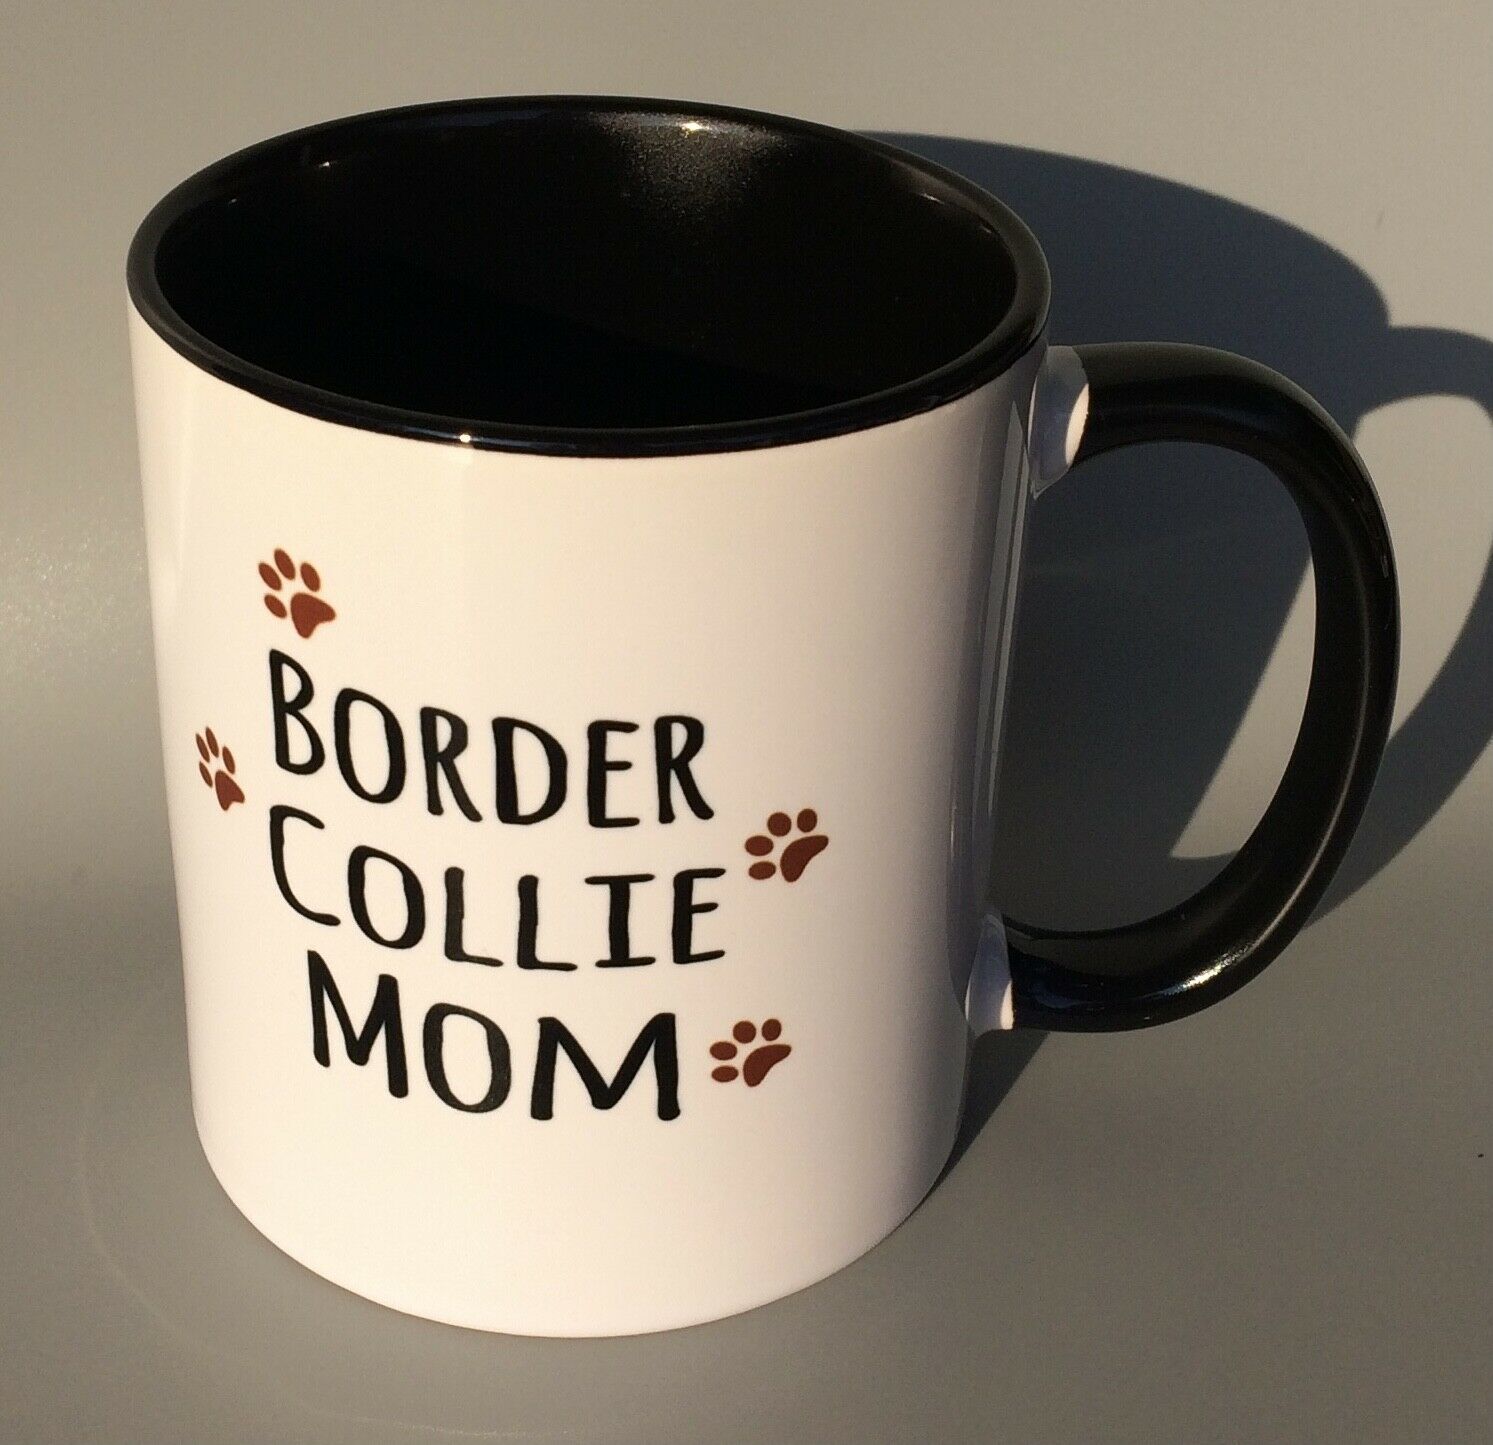 Border Collie Mom Coffee Mug Cup W/ Paw Prints, Printed On Both Sides Of Mug